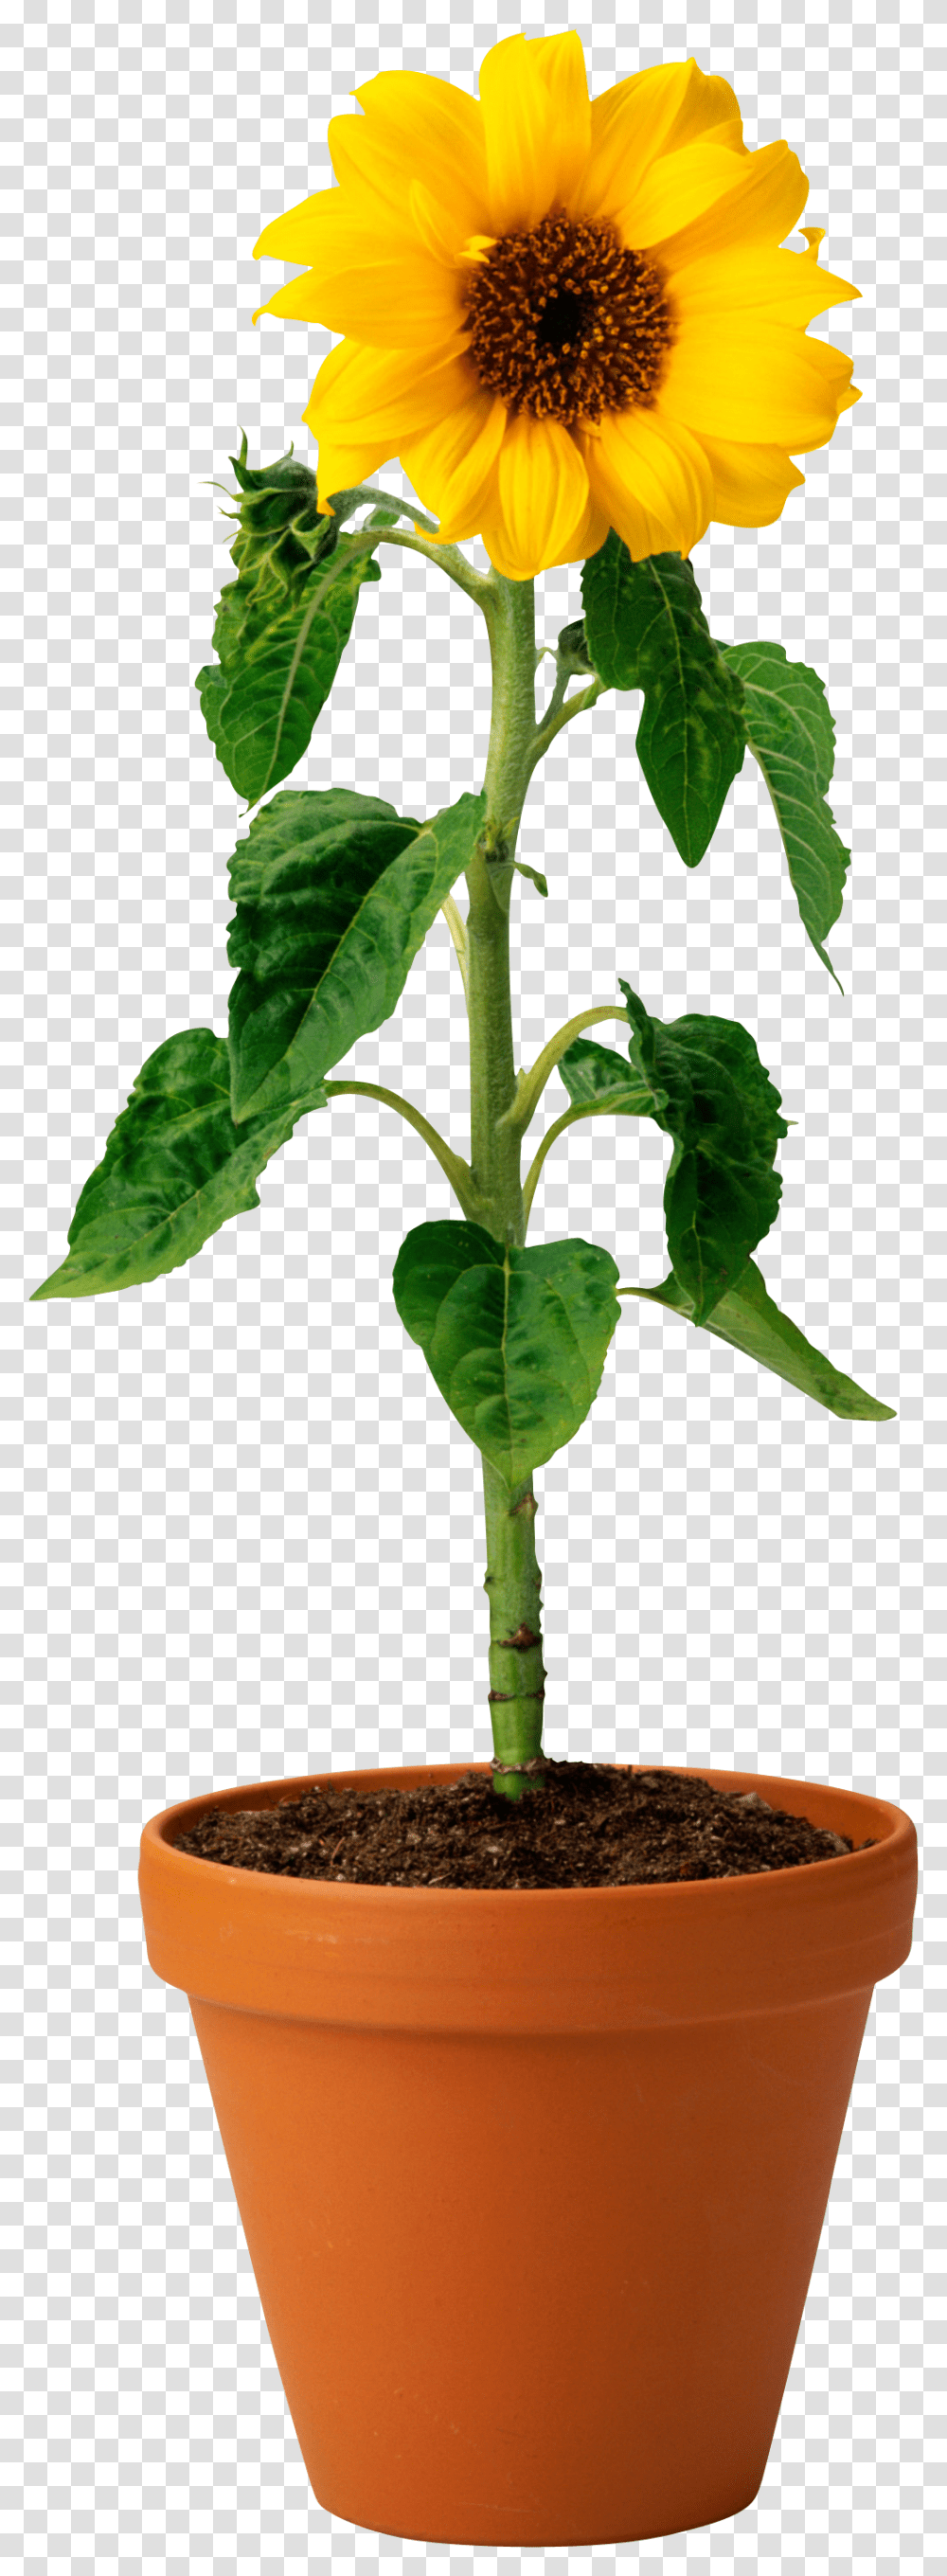 Sunflower, Plant, Leaf, Blossom, Green Transparent Png